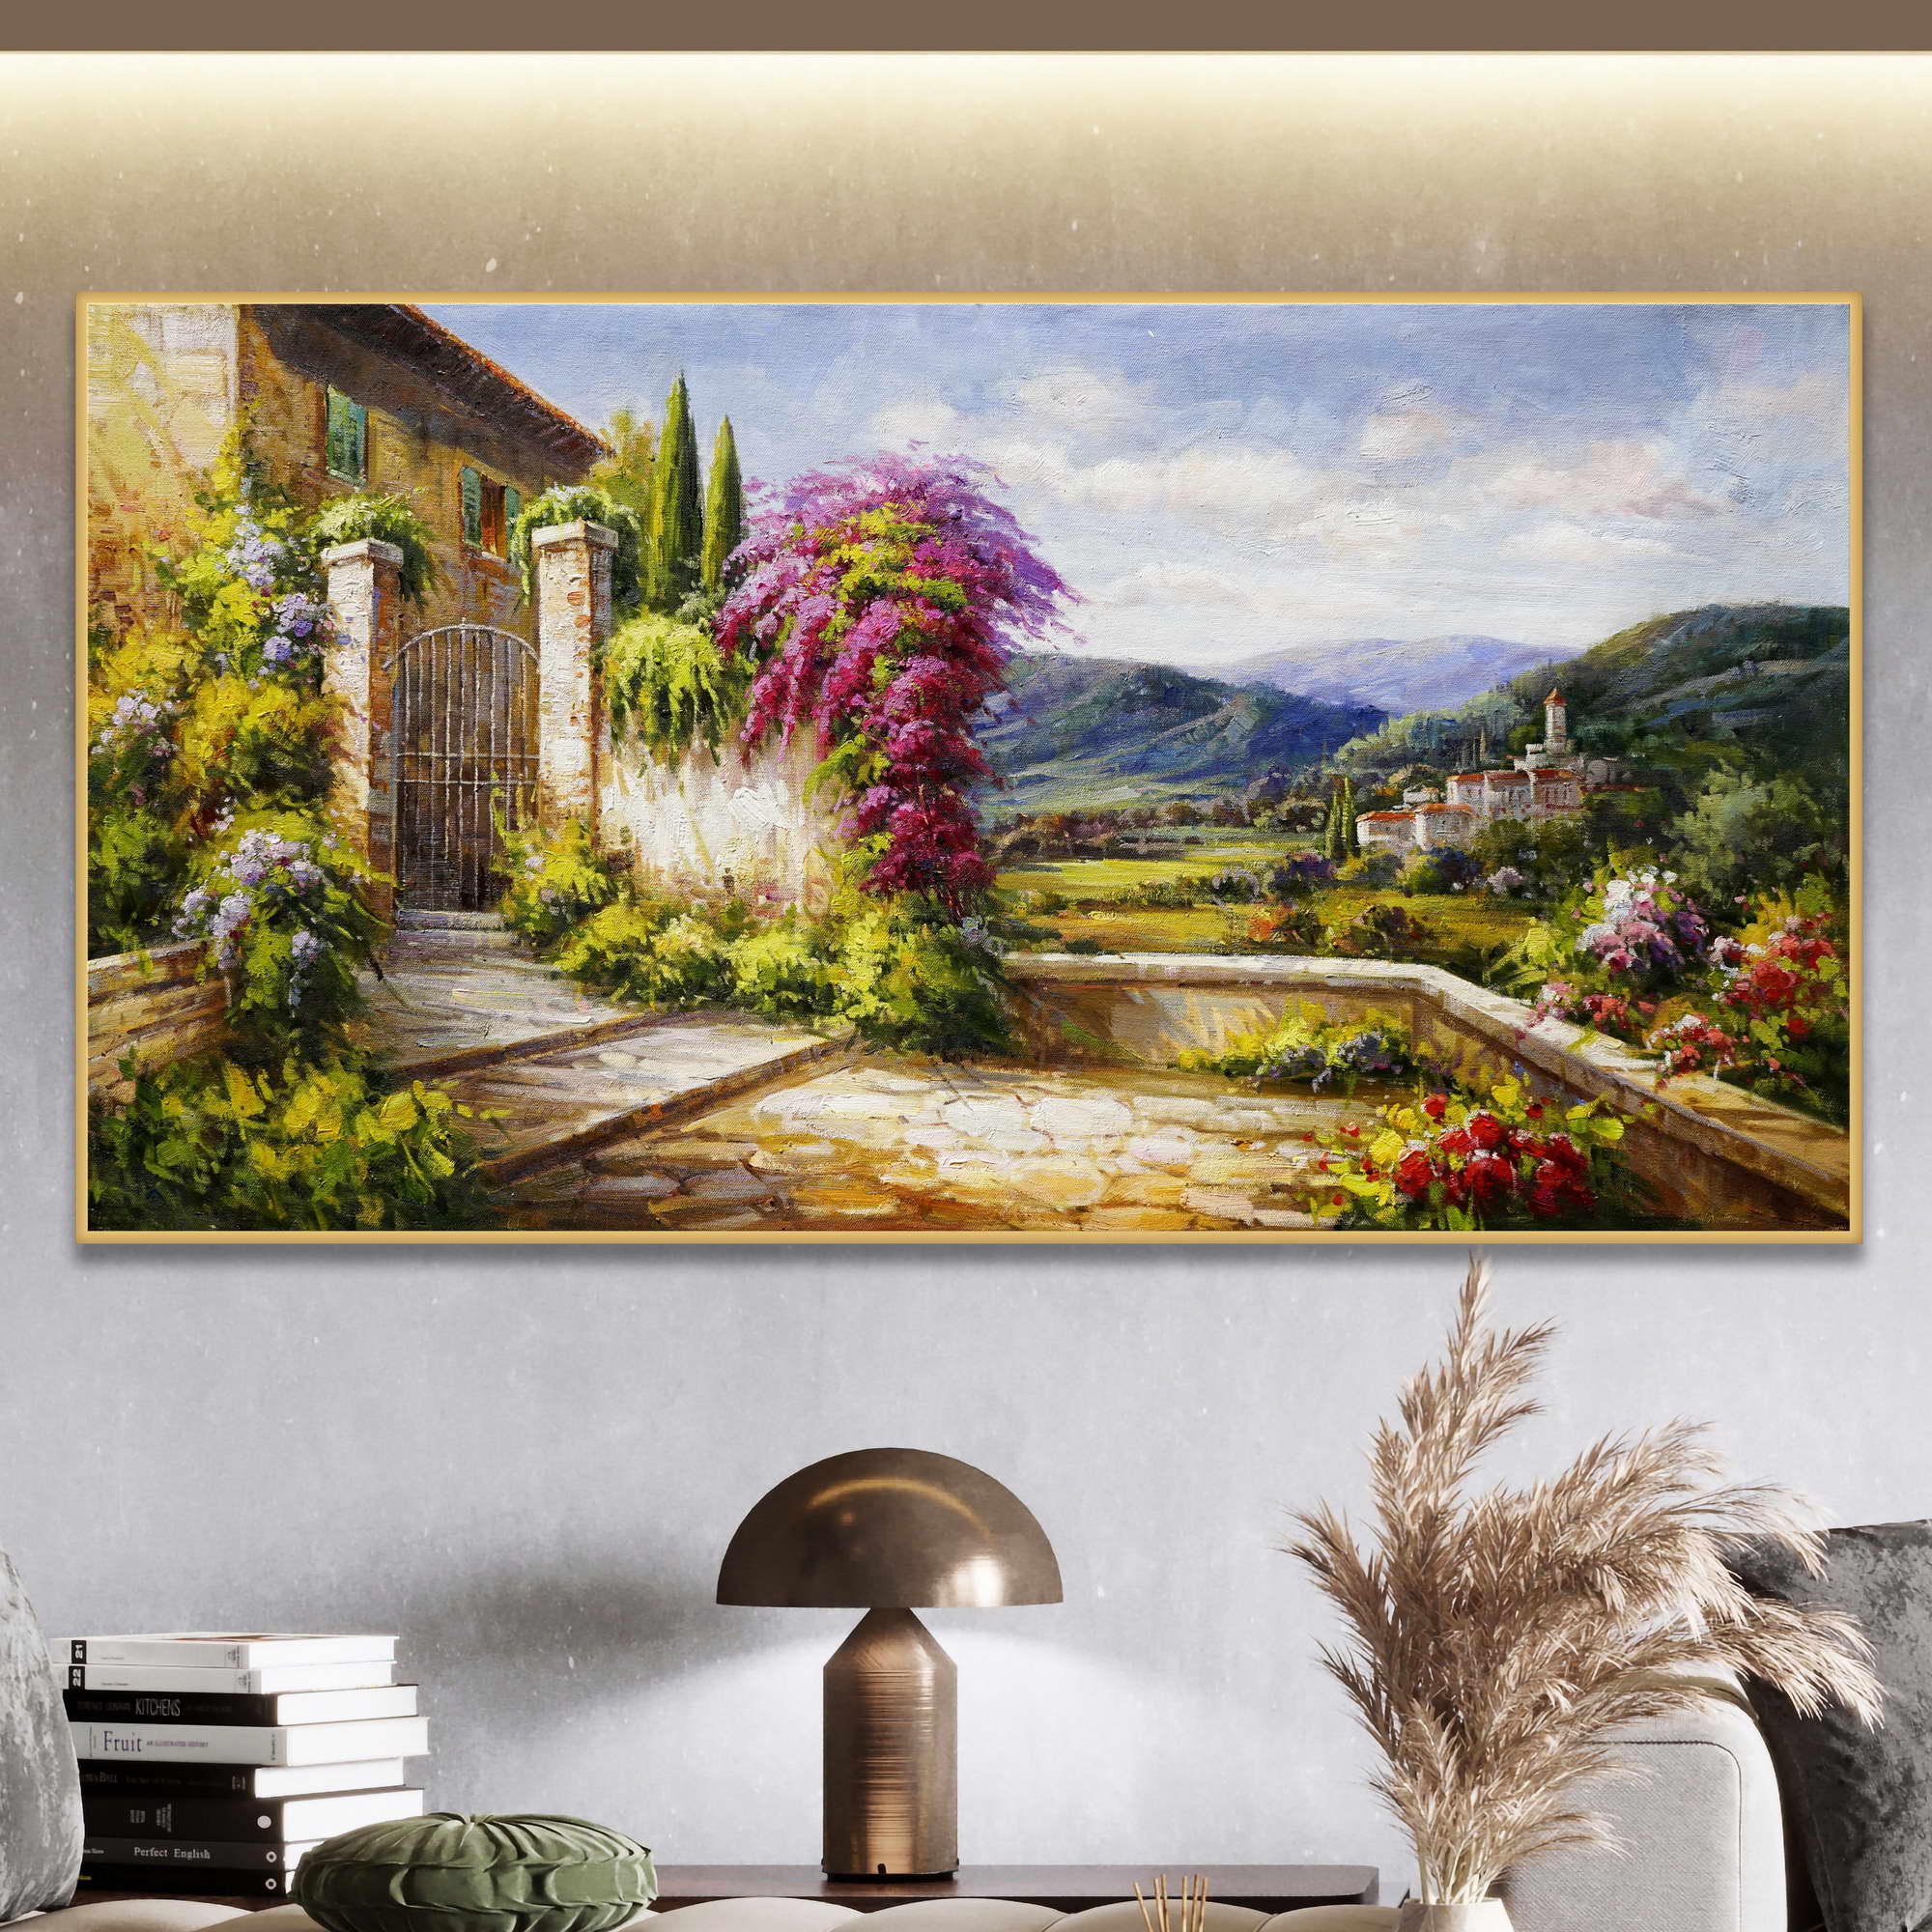 Dipinto di una casa di campagna con giardino fiorito e borgo sullo sfondo